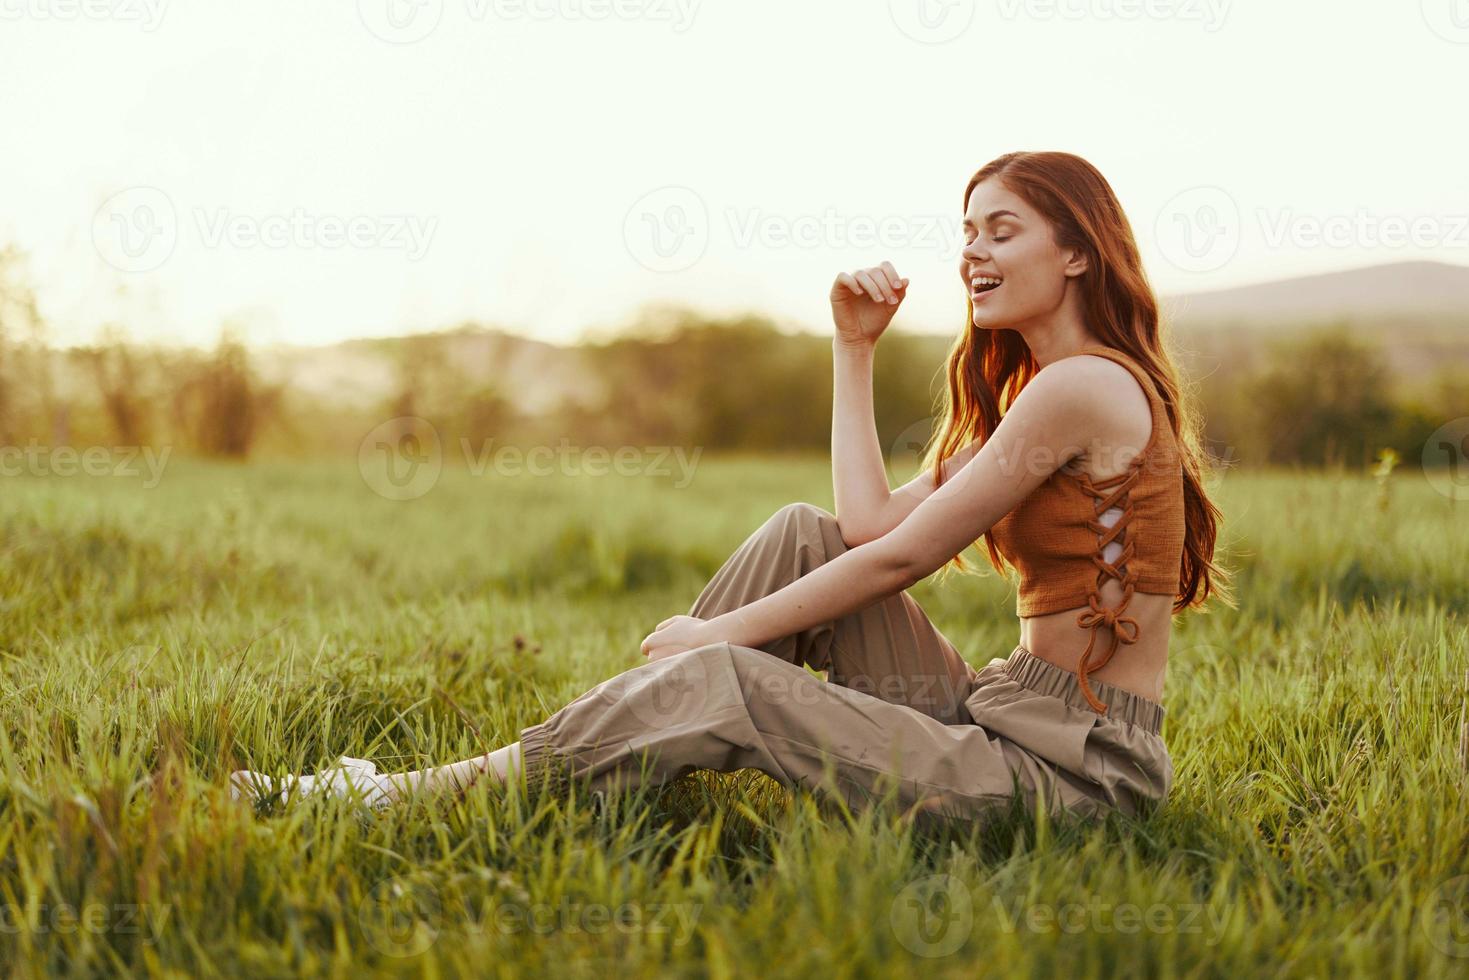 un' donna si siede su il verde giovane fresco erba nel il Aperto aria e ride e sorrisi felicemente nel il tramonto luce, sua volante rosso capelli svolazzanti nel il vento foto